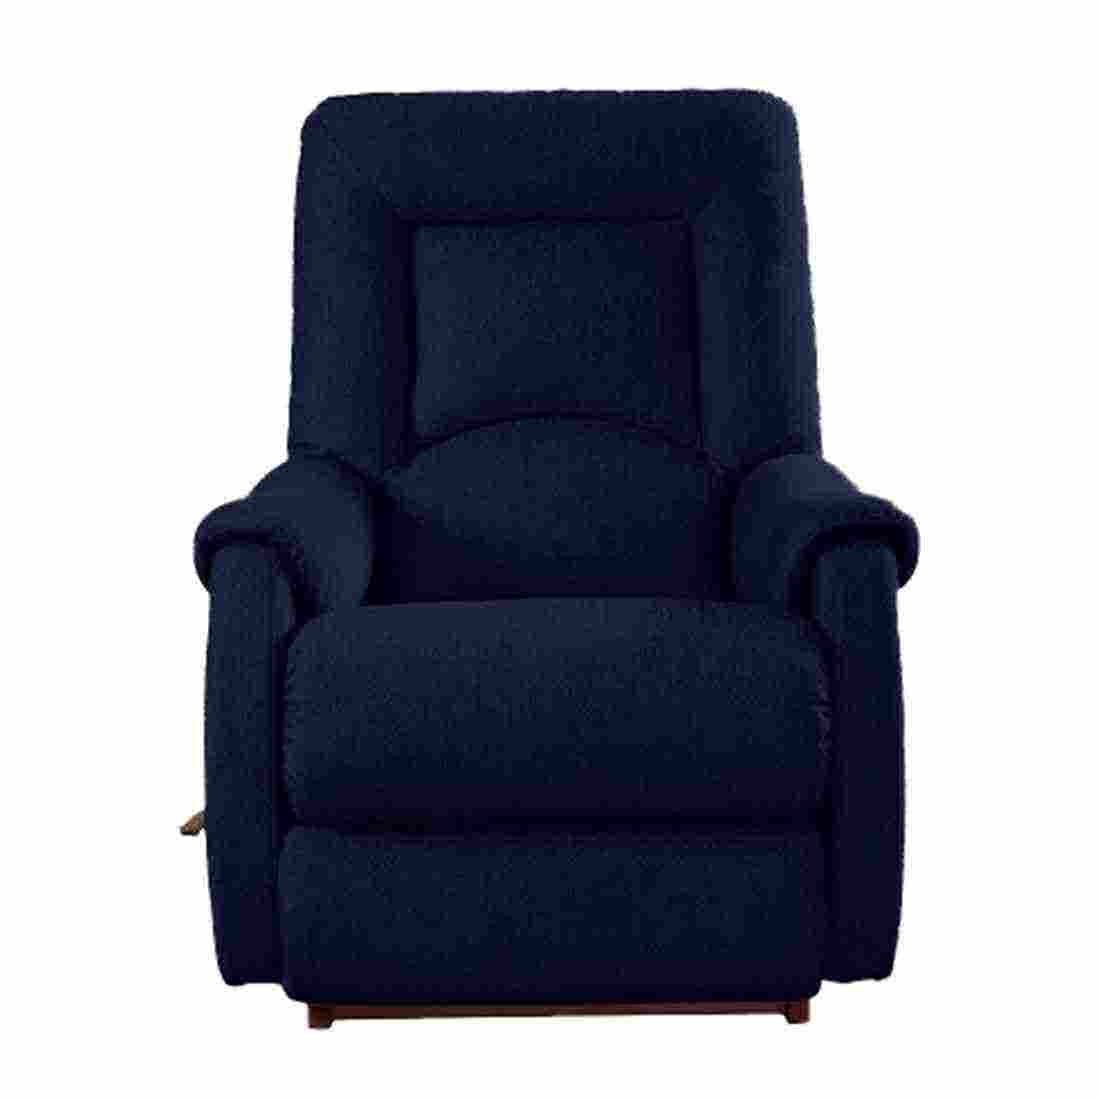 เก้าอี้ปรับเอนนอน La-Z-Boy 10T-741-C-142687 Serenity ผ้า i-Clean สี Midnight